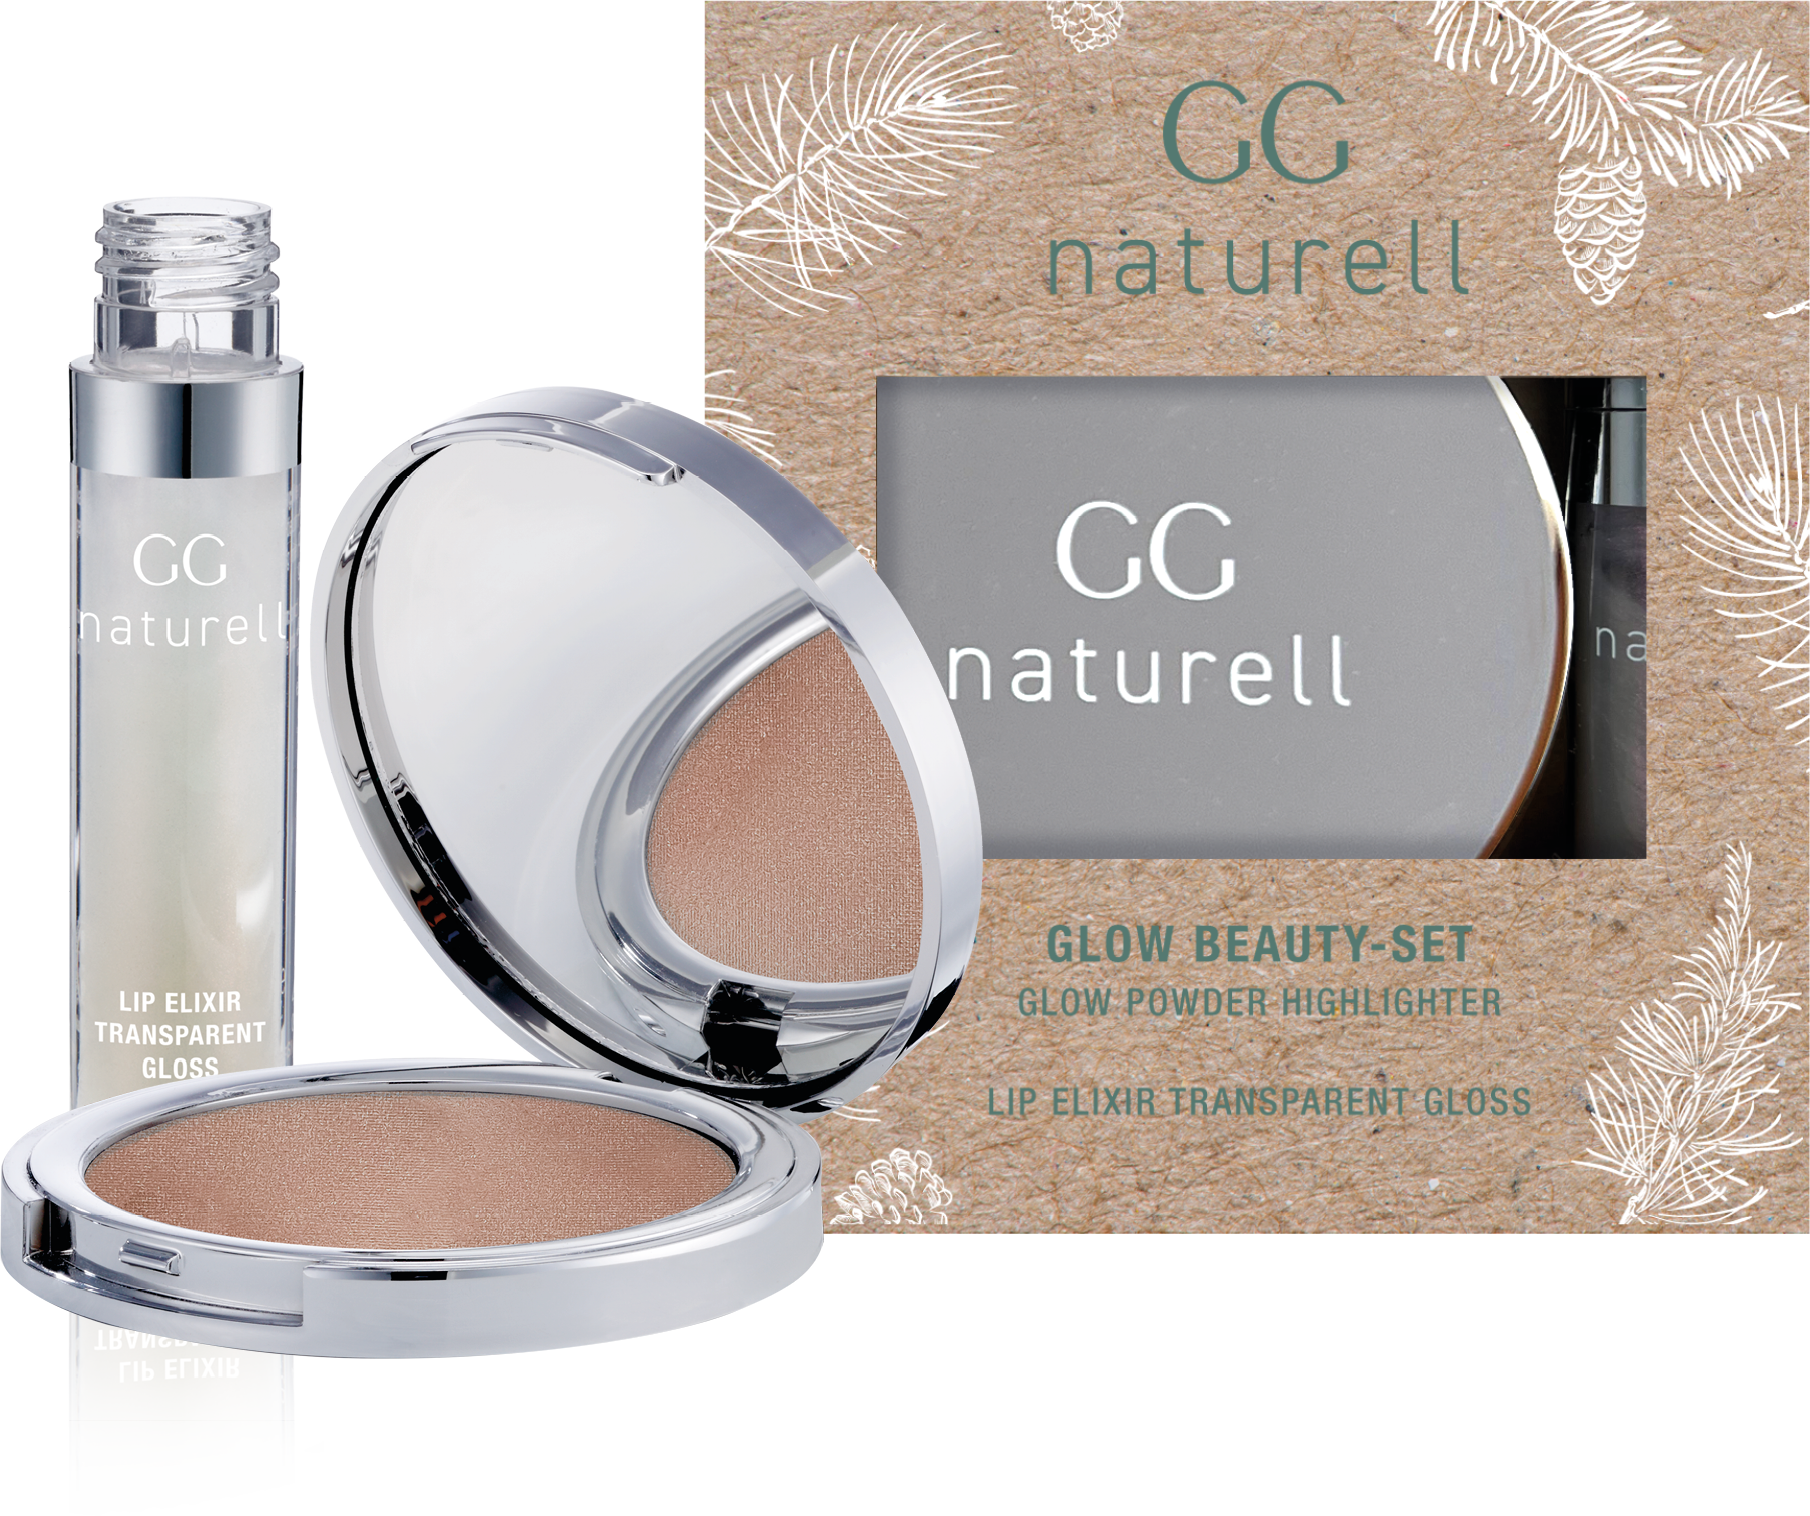 GG naturell Glow Beauty Set